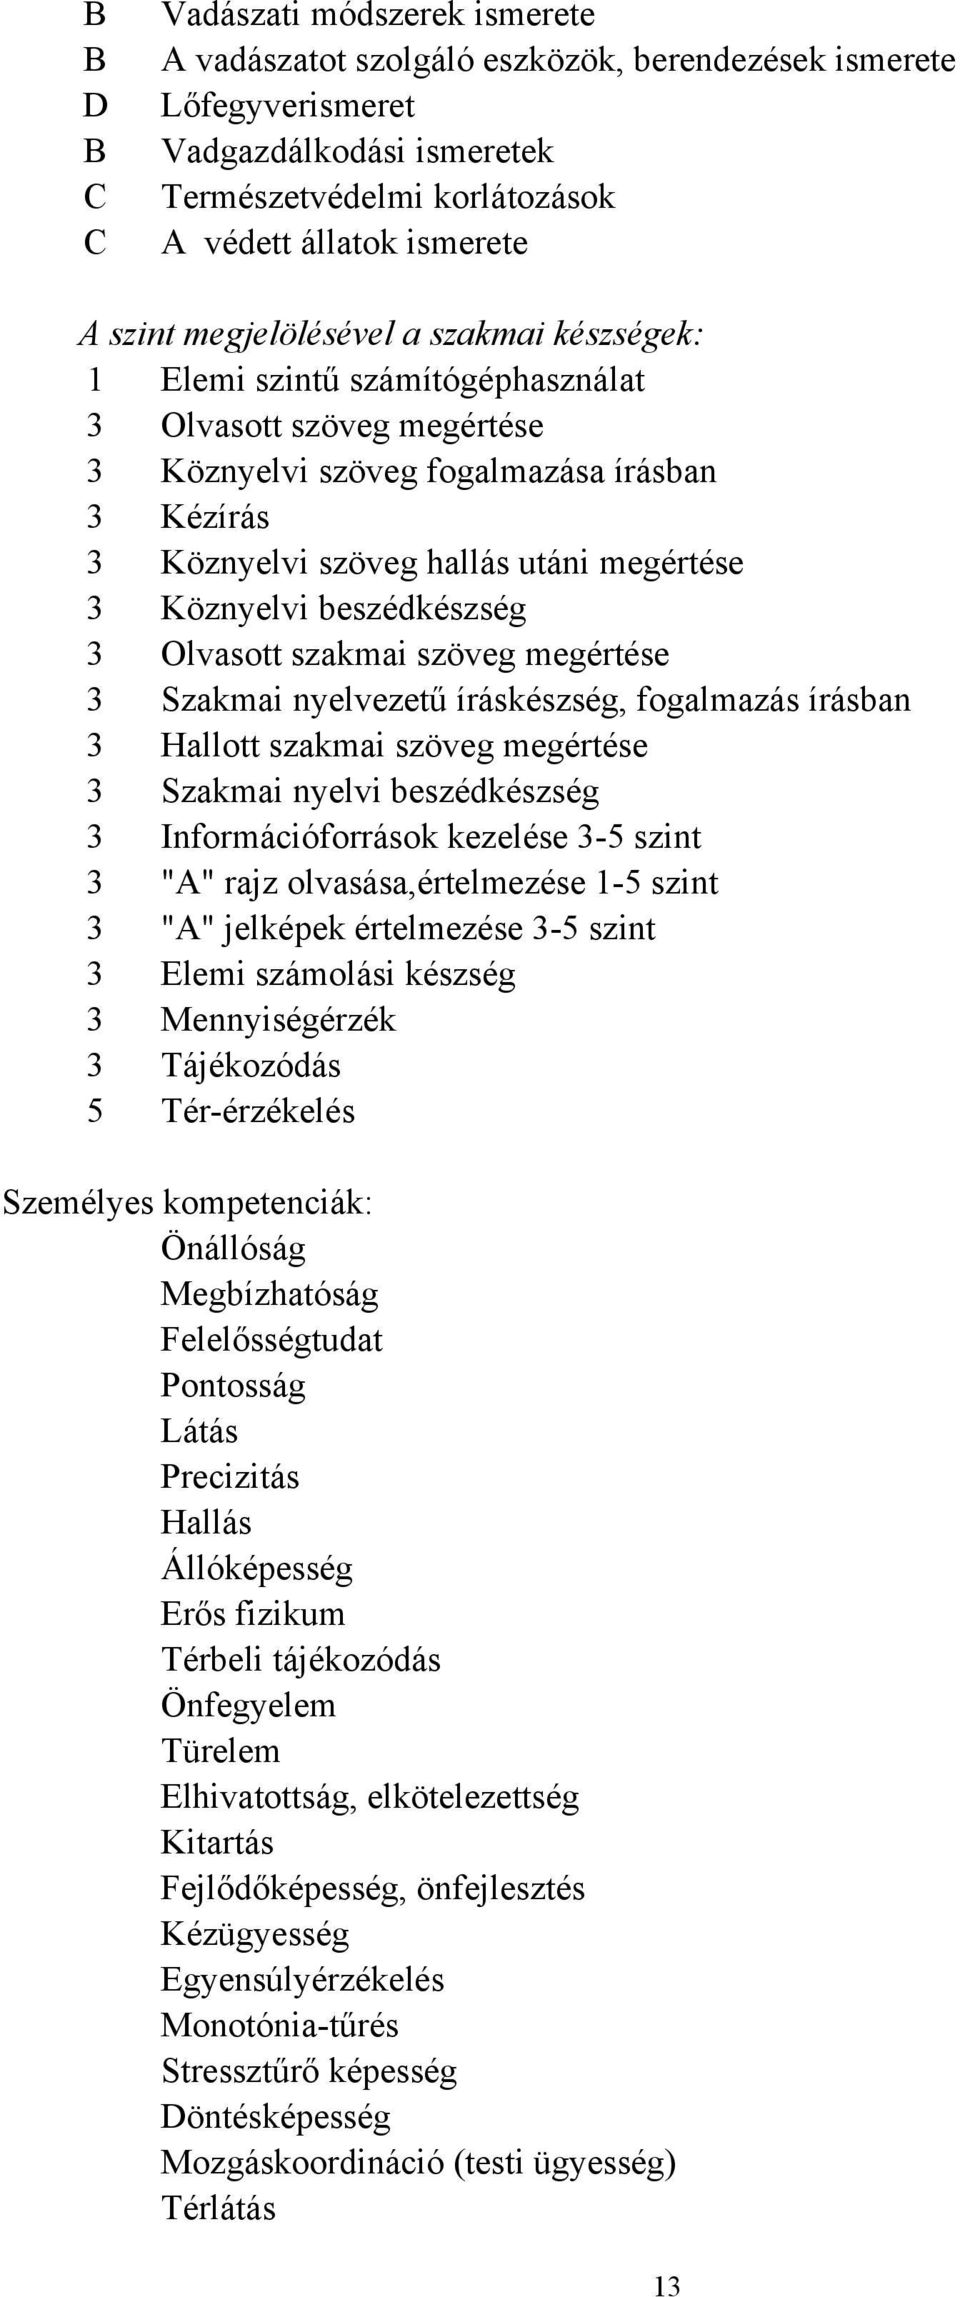 Köznyelvi beszédkészség 3 Olvasott szakmai szöveg megértése 3 Szakmai nyelvezetű íráskészség, fogalmazás írásban 3 Hallott szakmai szöveg megértése 3 Szakmai nyelvi beszédkészség 3 Információforrások